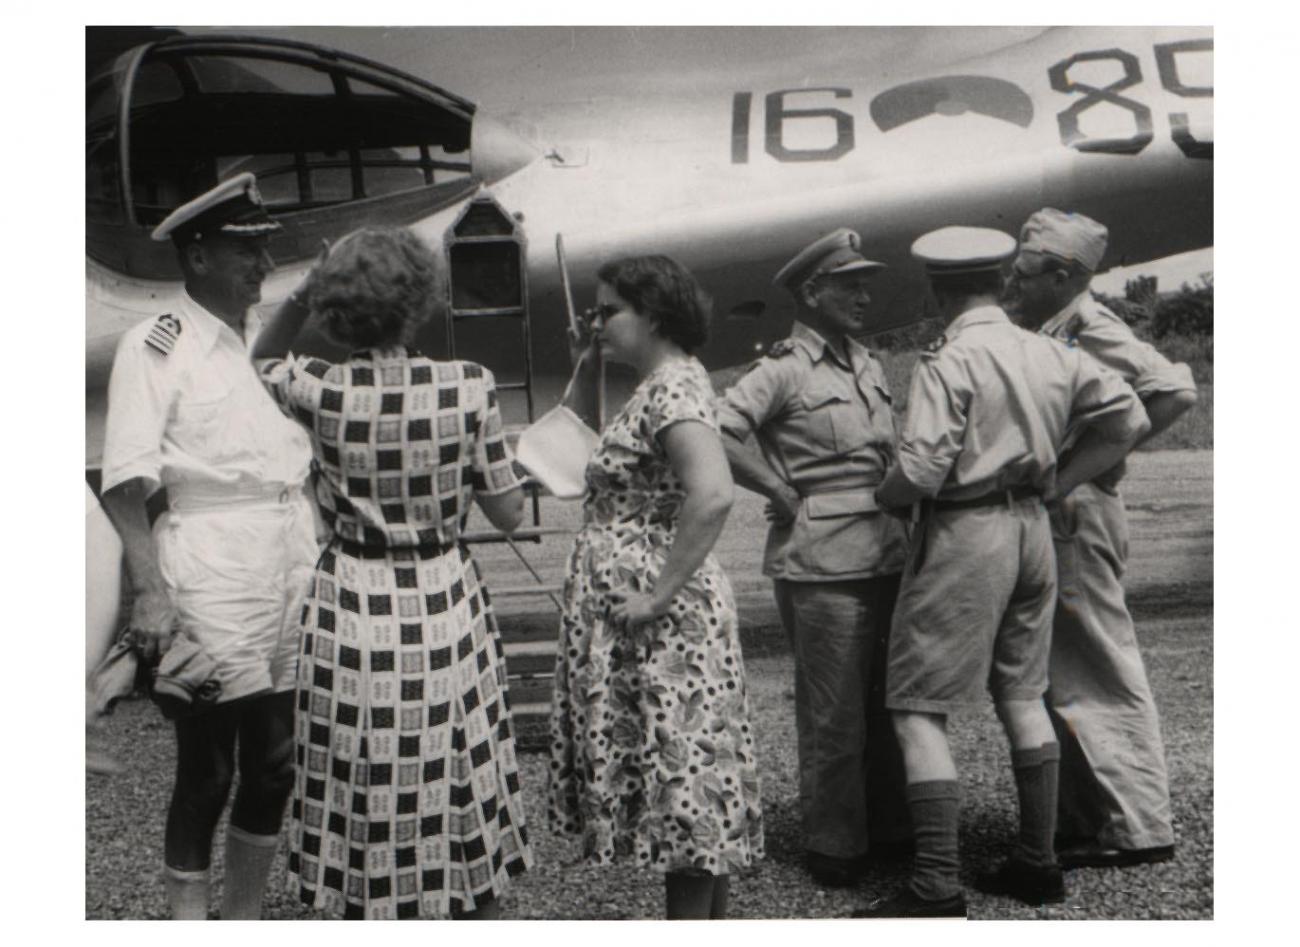 BD/54/46 - 
Ifar, groepsfoto Westers gezelschap voor vliegtuig
